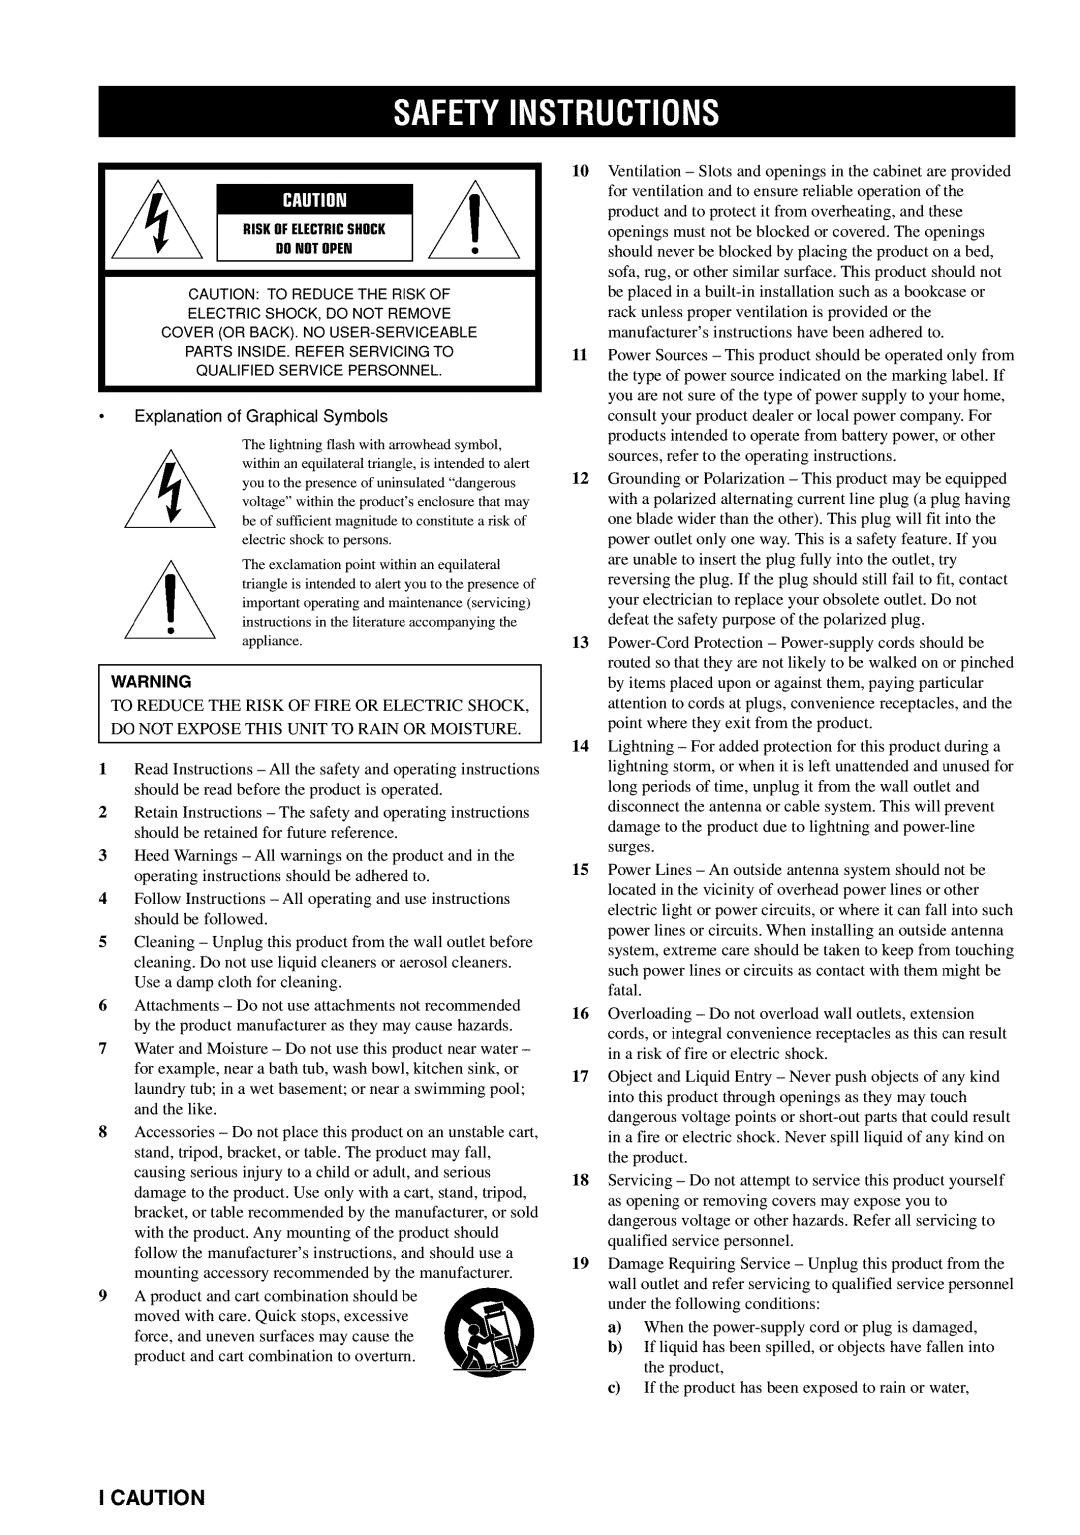 Yamaha RX-V730 owner manual Icaution, Riskof Electricshock Donotopen 